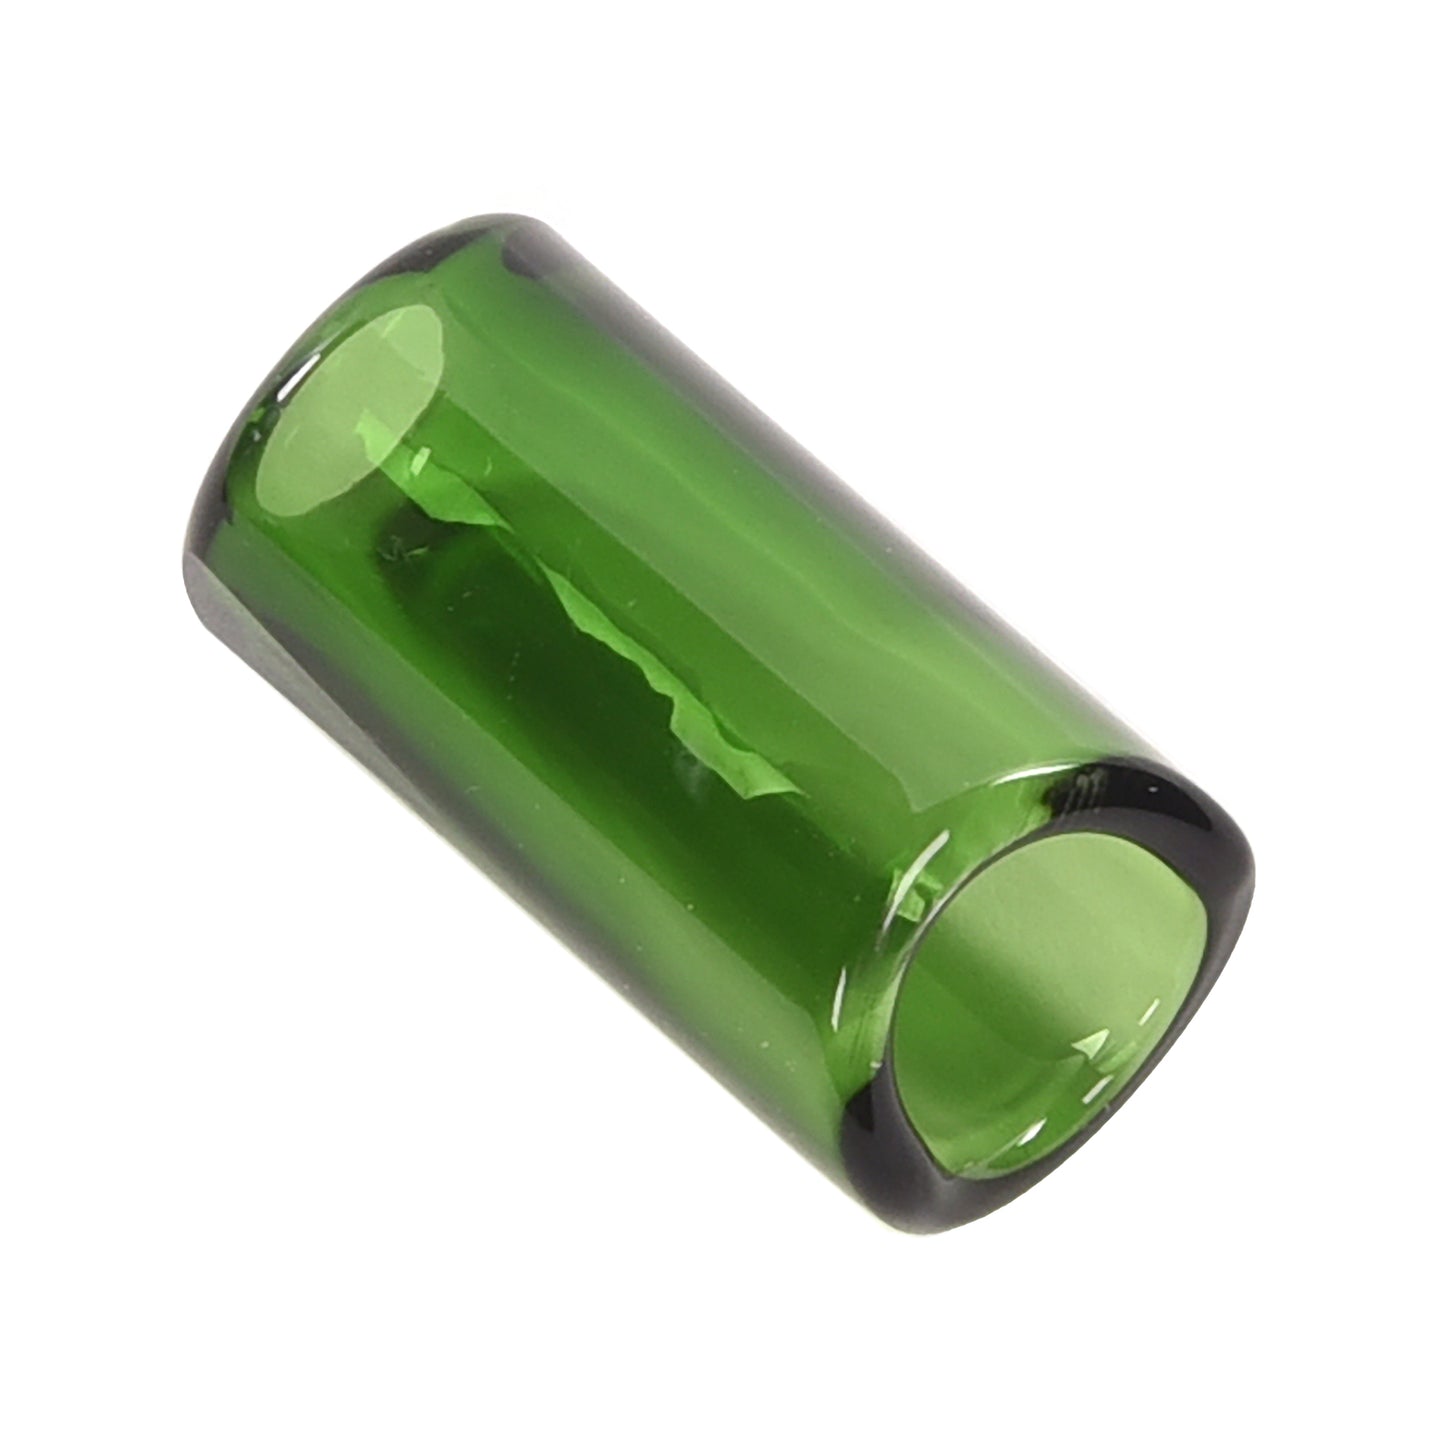 The Rock Slide Small 17.5mm Internal Diameter x 48mm Length Green Glass